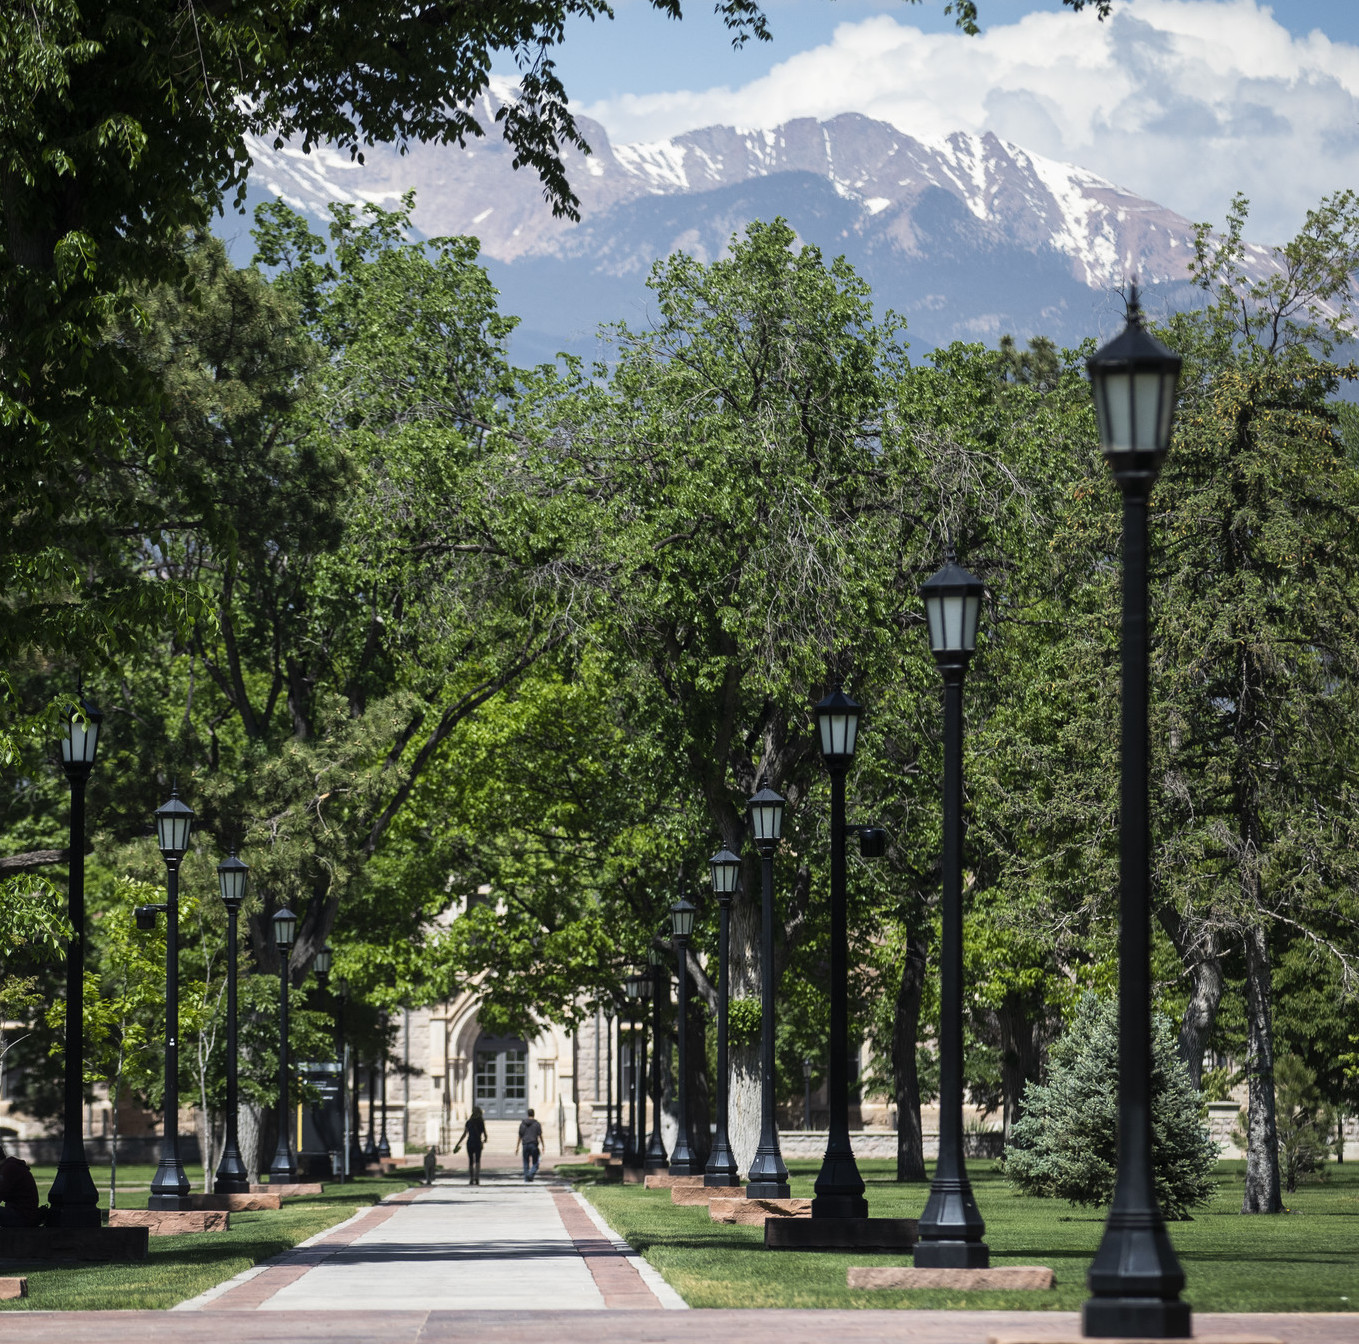 Colorado College campus in Colorado Springs, CO.